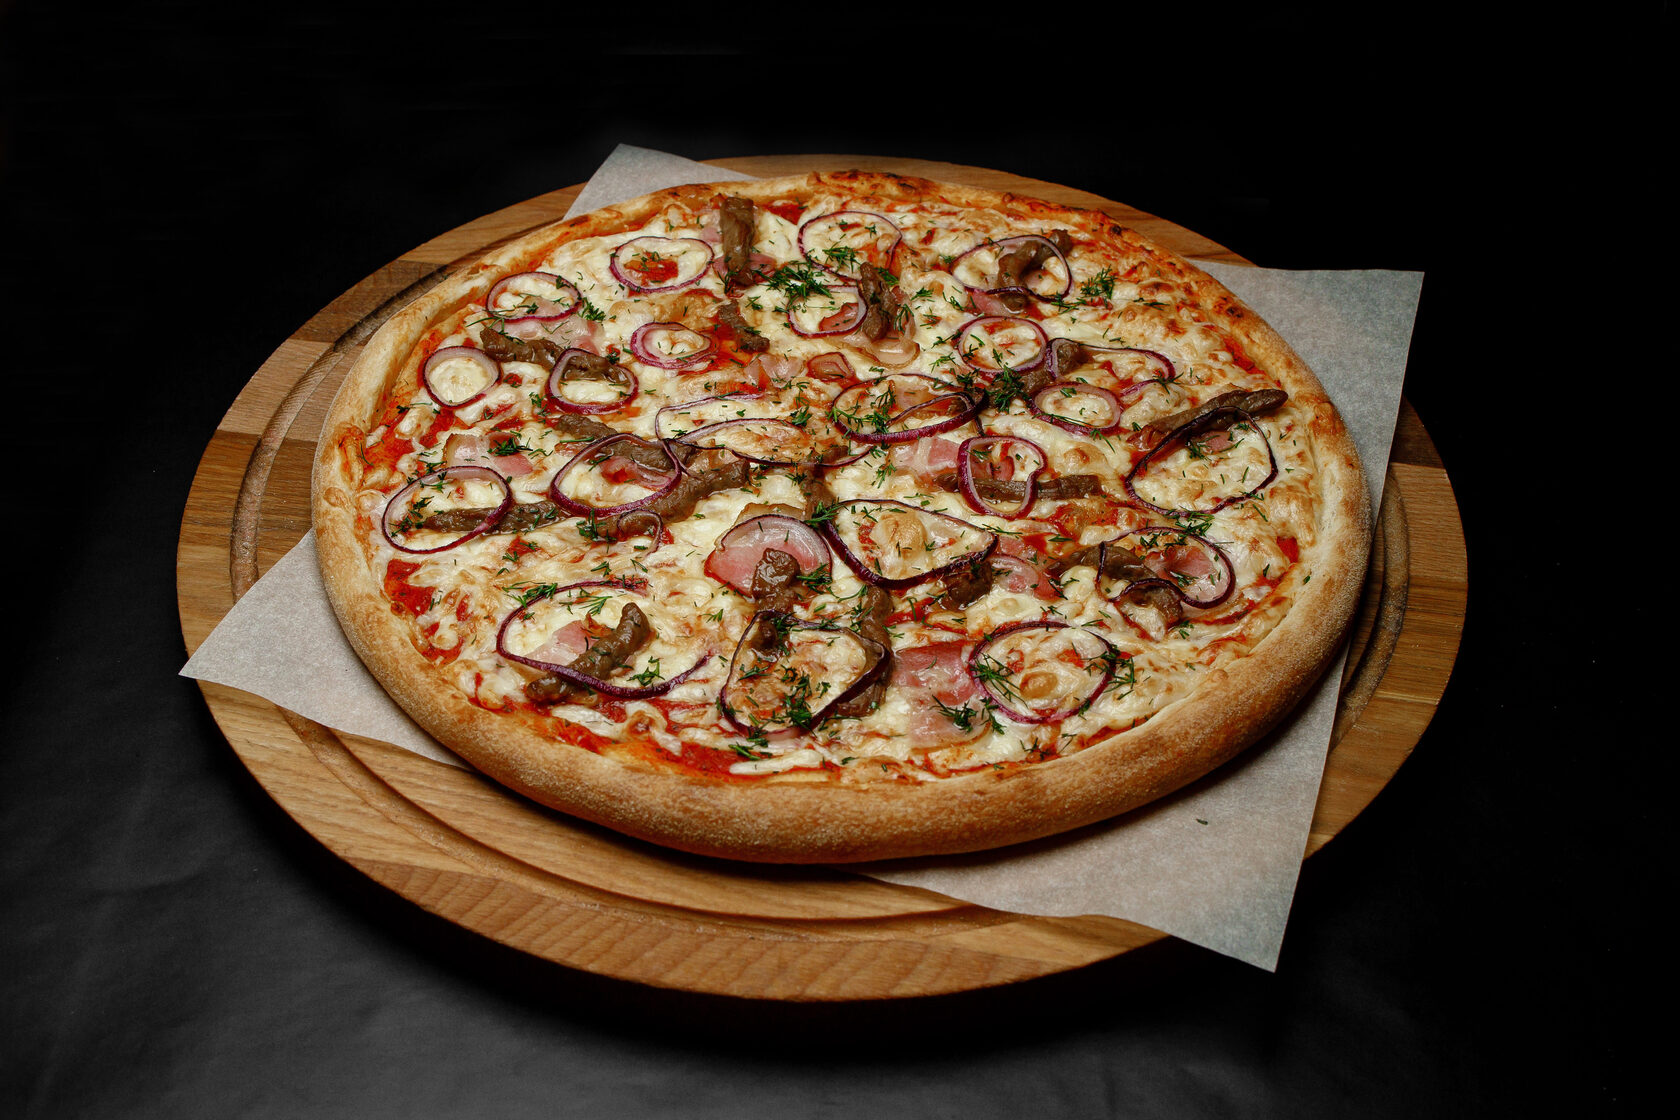 лучшая доставка пиццы в красноярске рейтинг фото 23